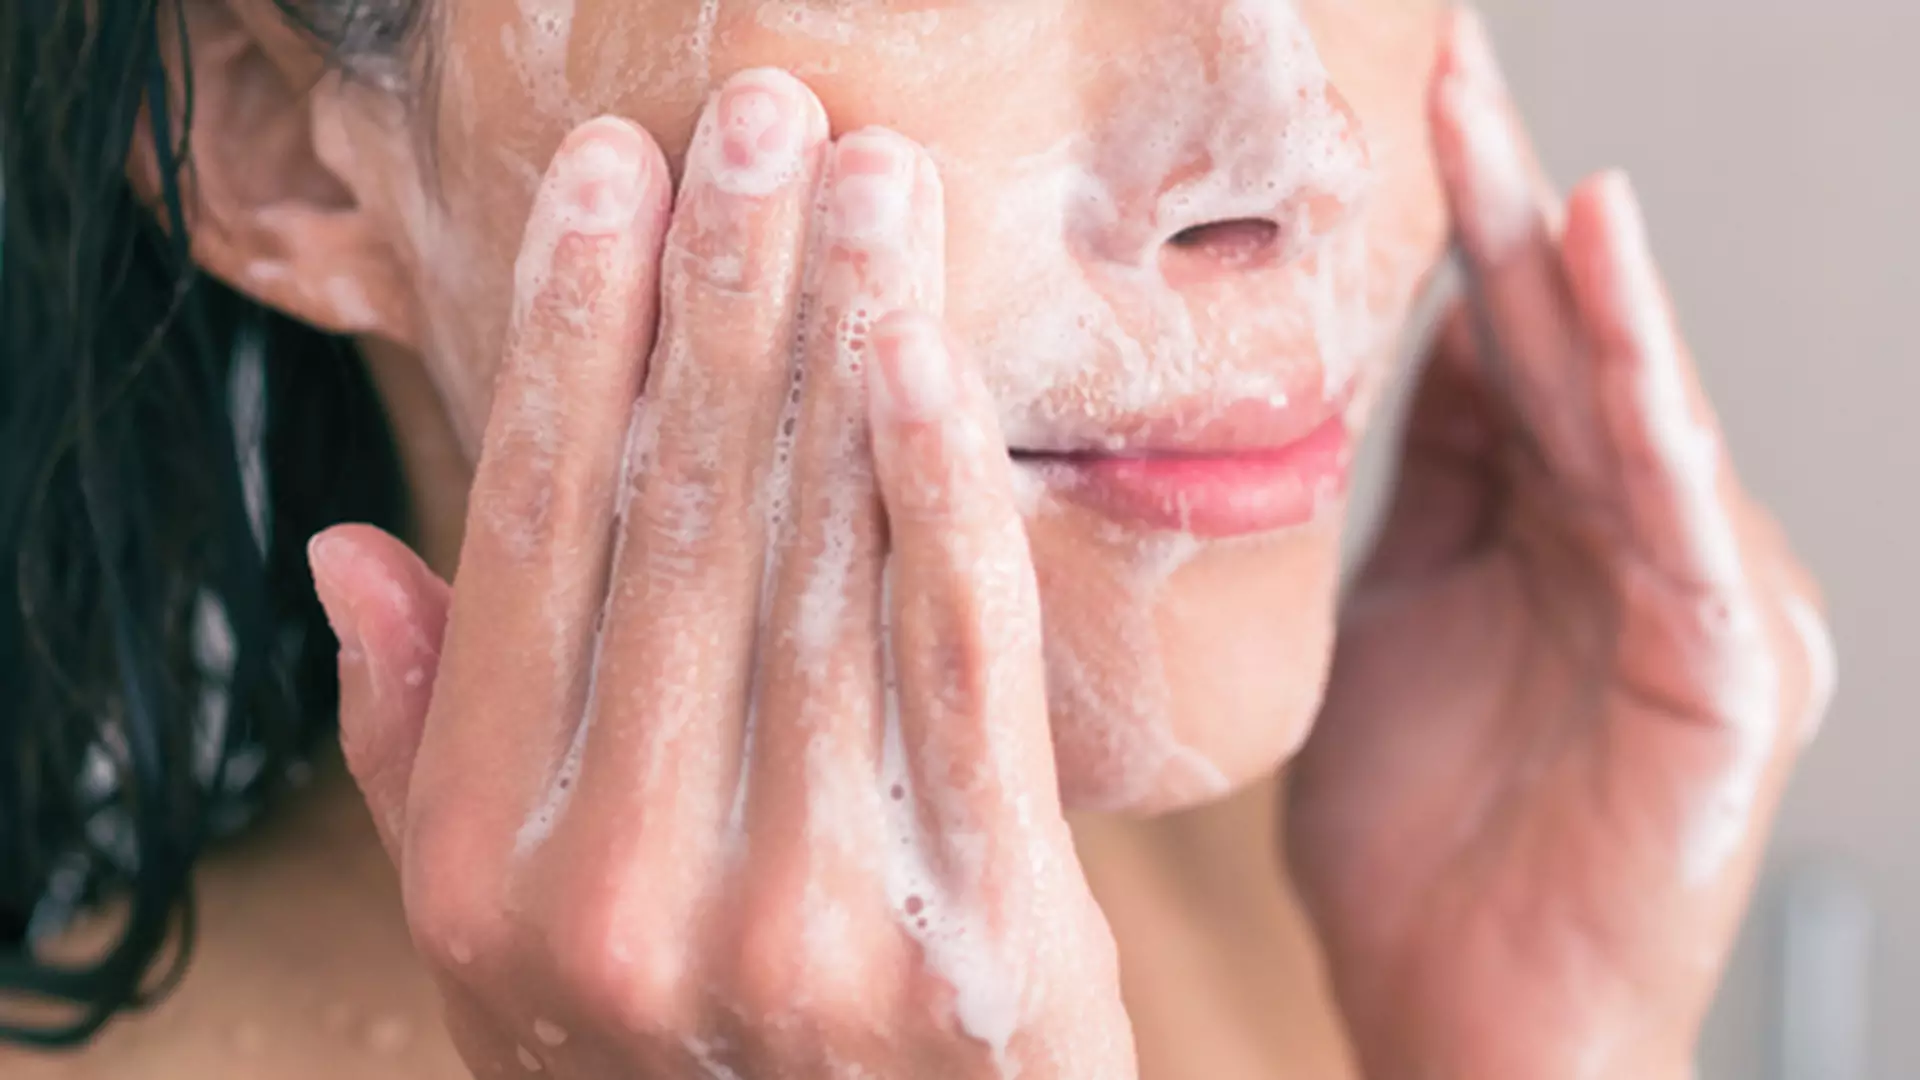 Myjesz twarz podczas kąpieli? Uważaj na te błędy